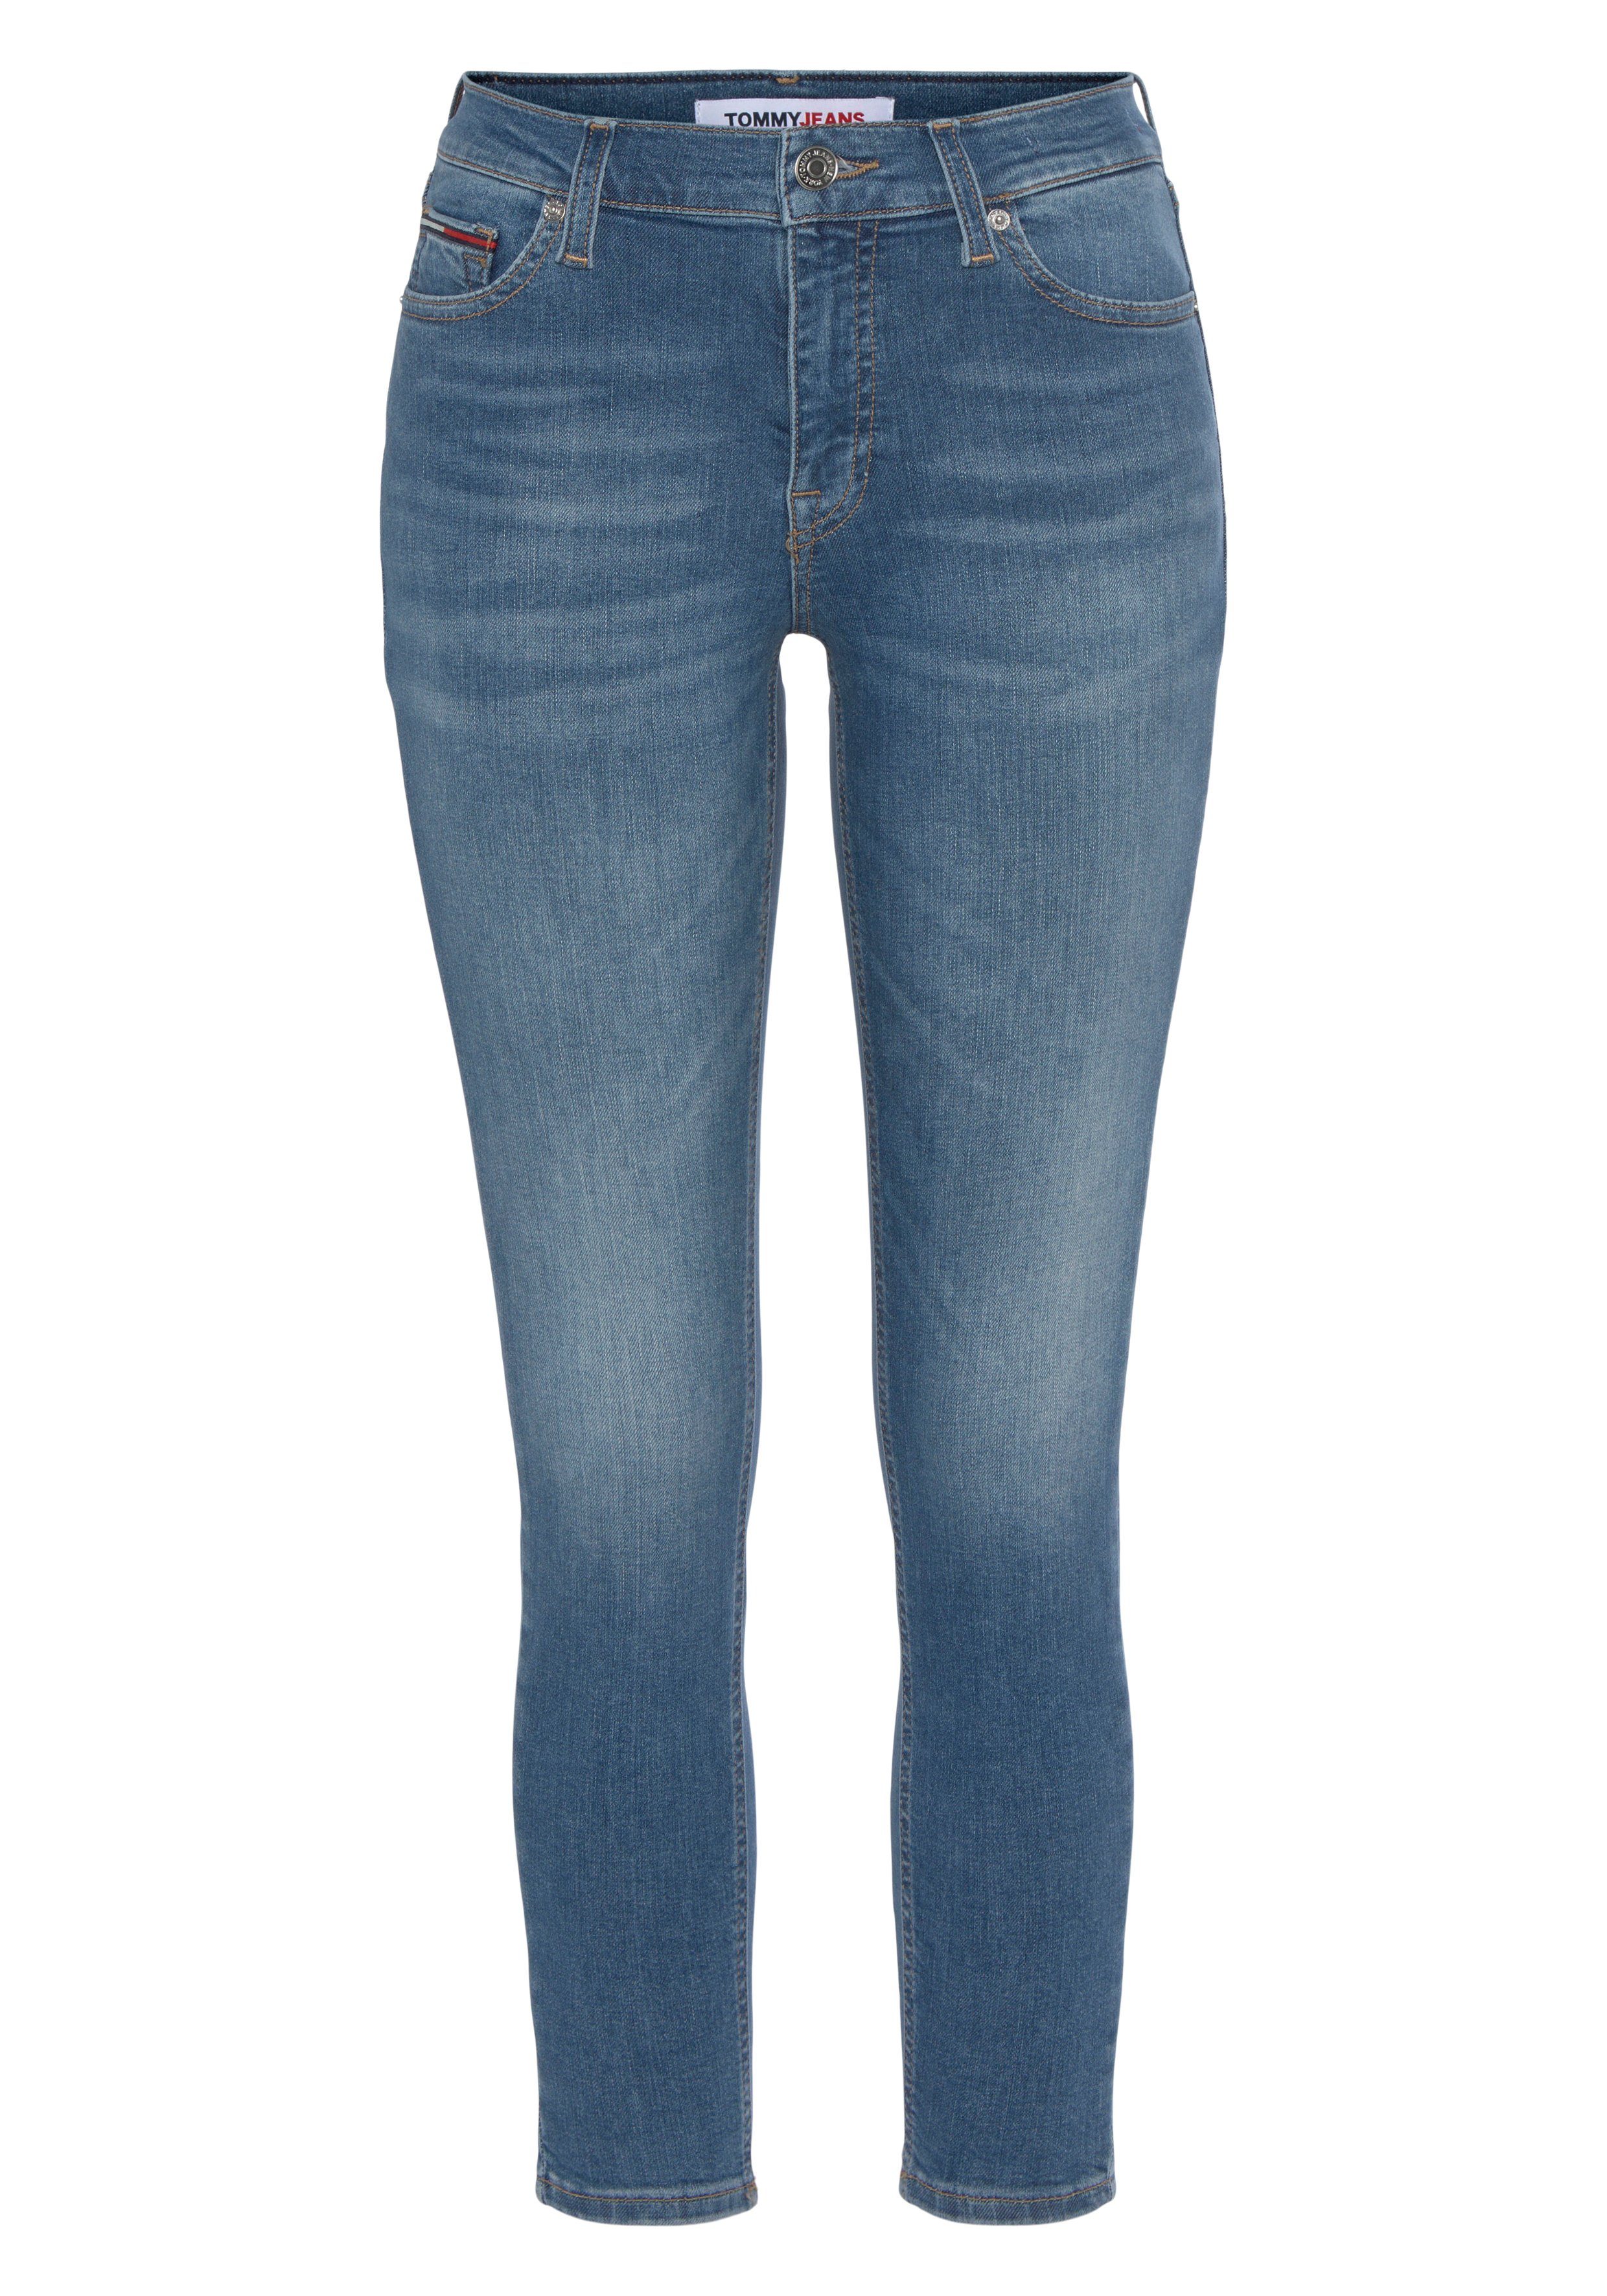 Skinny-fit-Jeans Baumwollstretch mit eine gute und Tommy Passform Logostickerei, Denim Jeans für Logobadge